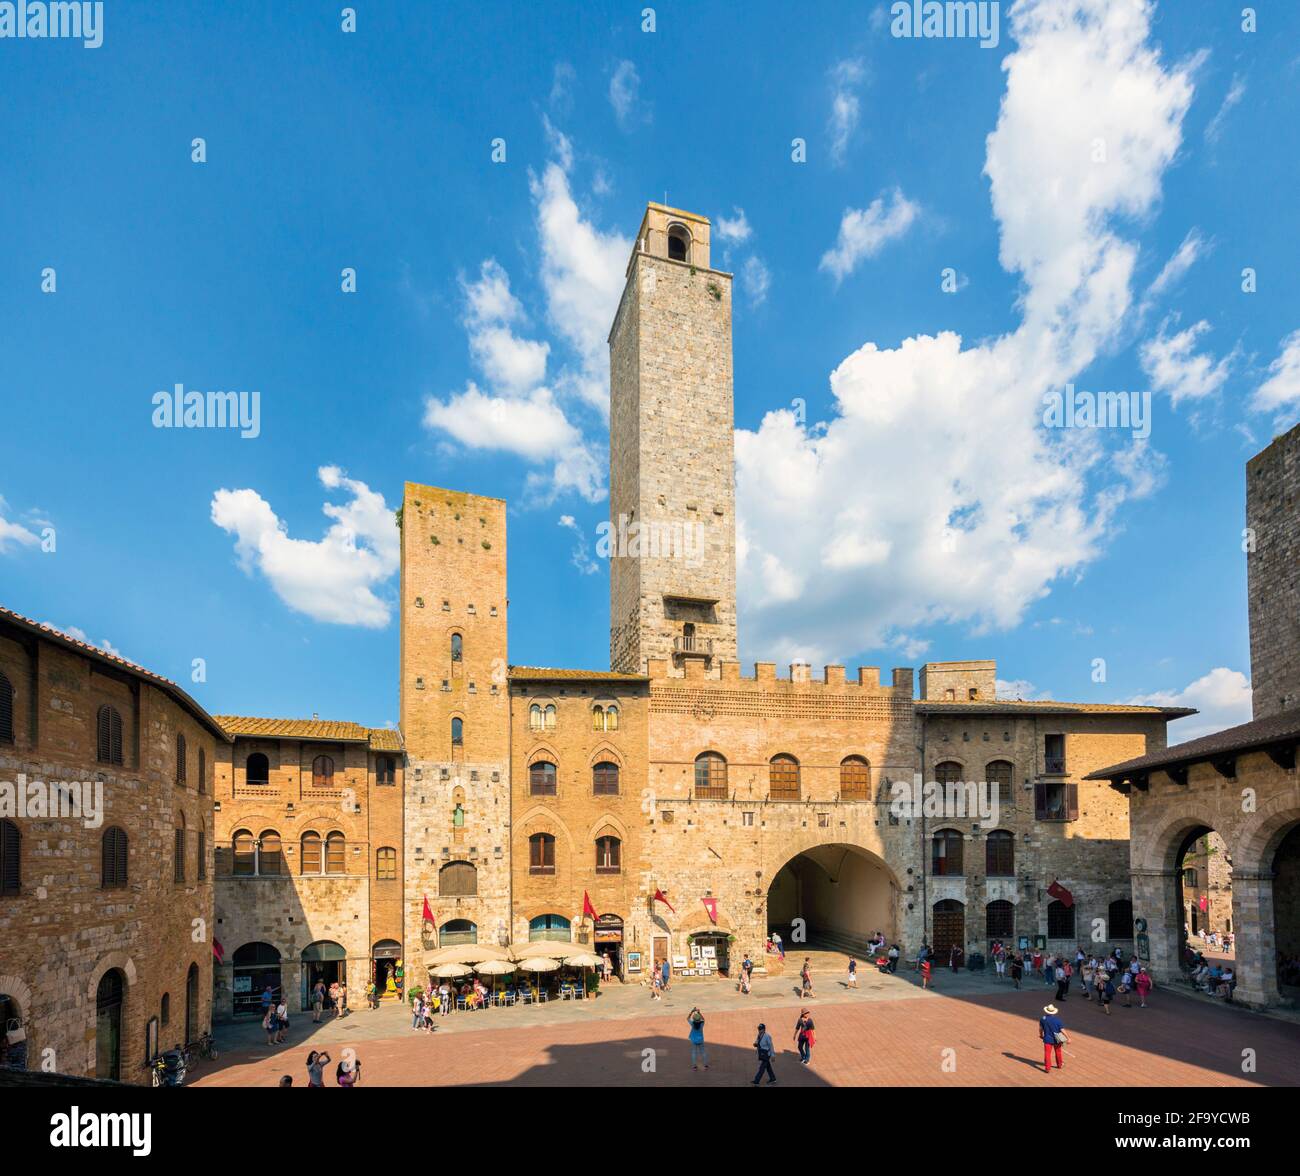 San Gimignano, Provinz Siena, Toskana, Italien. Piazza del Duomo. Das historische Zentrum von San Gimignano ist ein UNESCO-Weltkulturerbe. Stockfoto